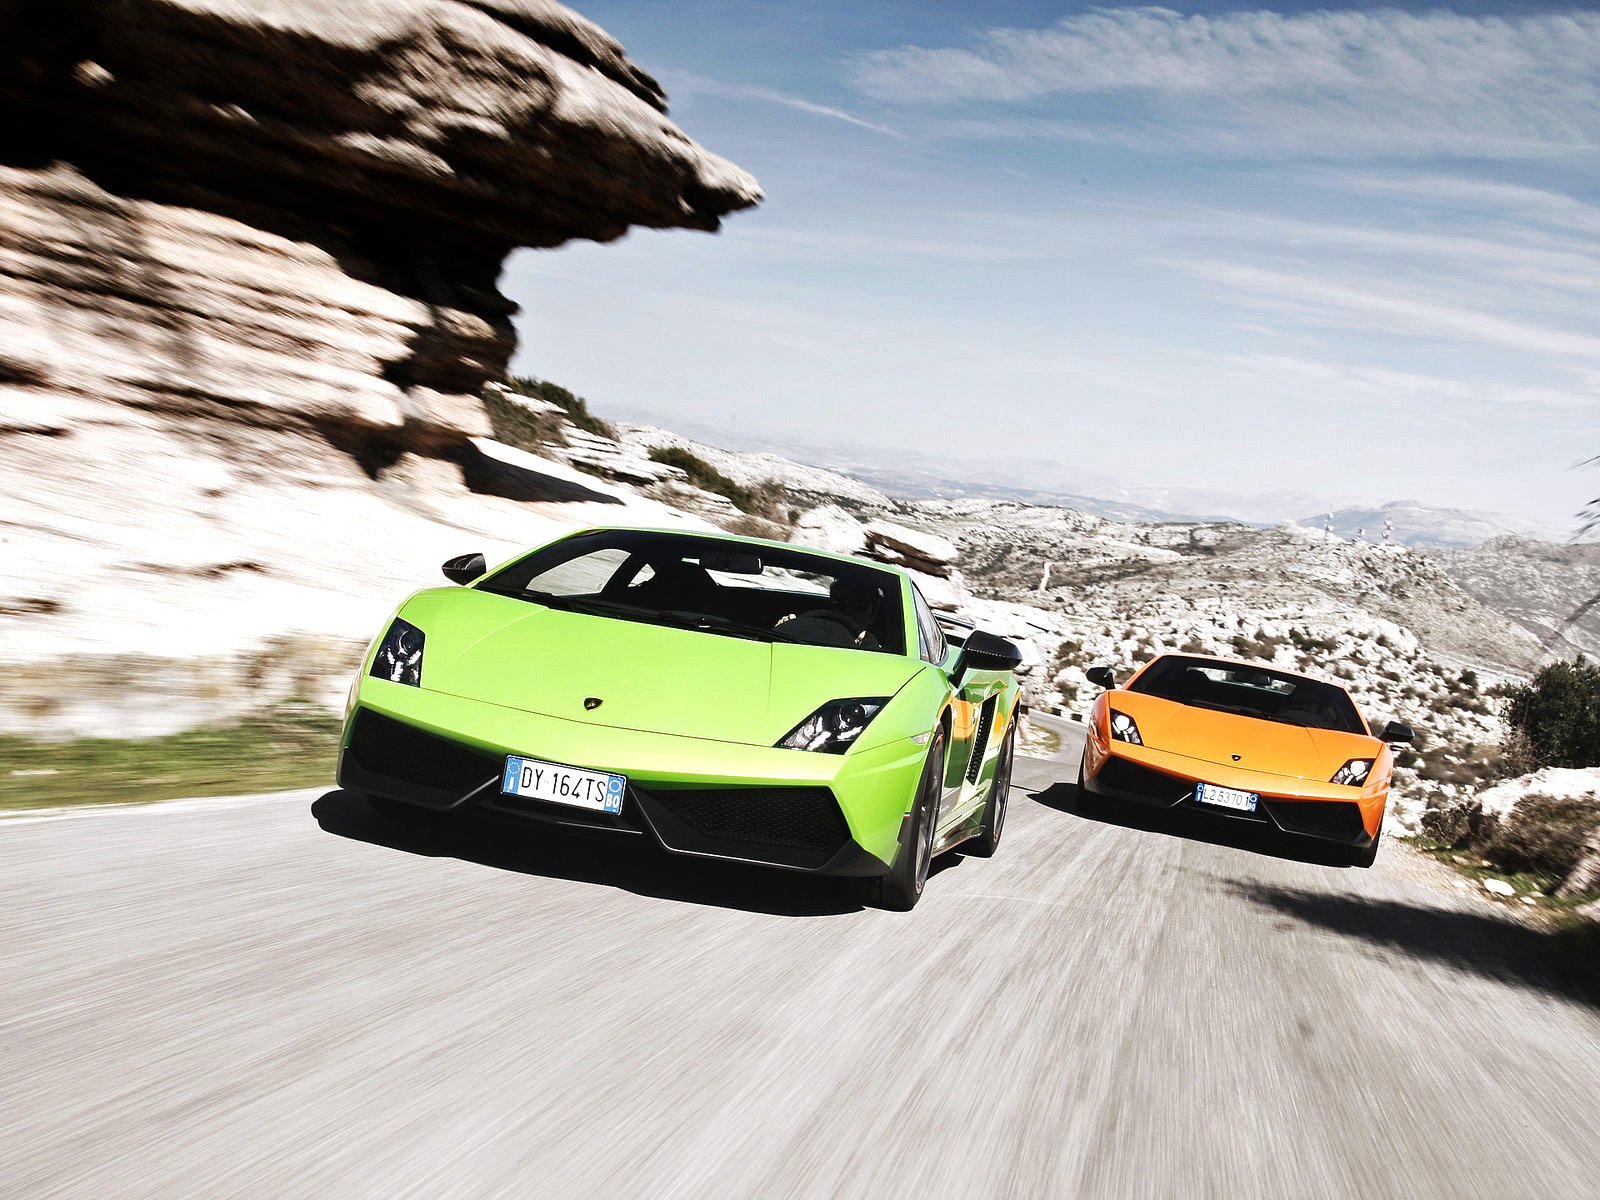 2010, Lamborghini, Gallardo, Lp570 4, Superleggera, Supercar Wallpaper